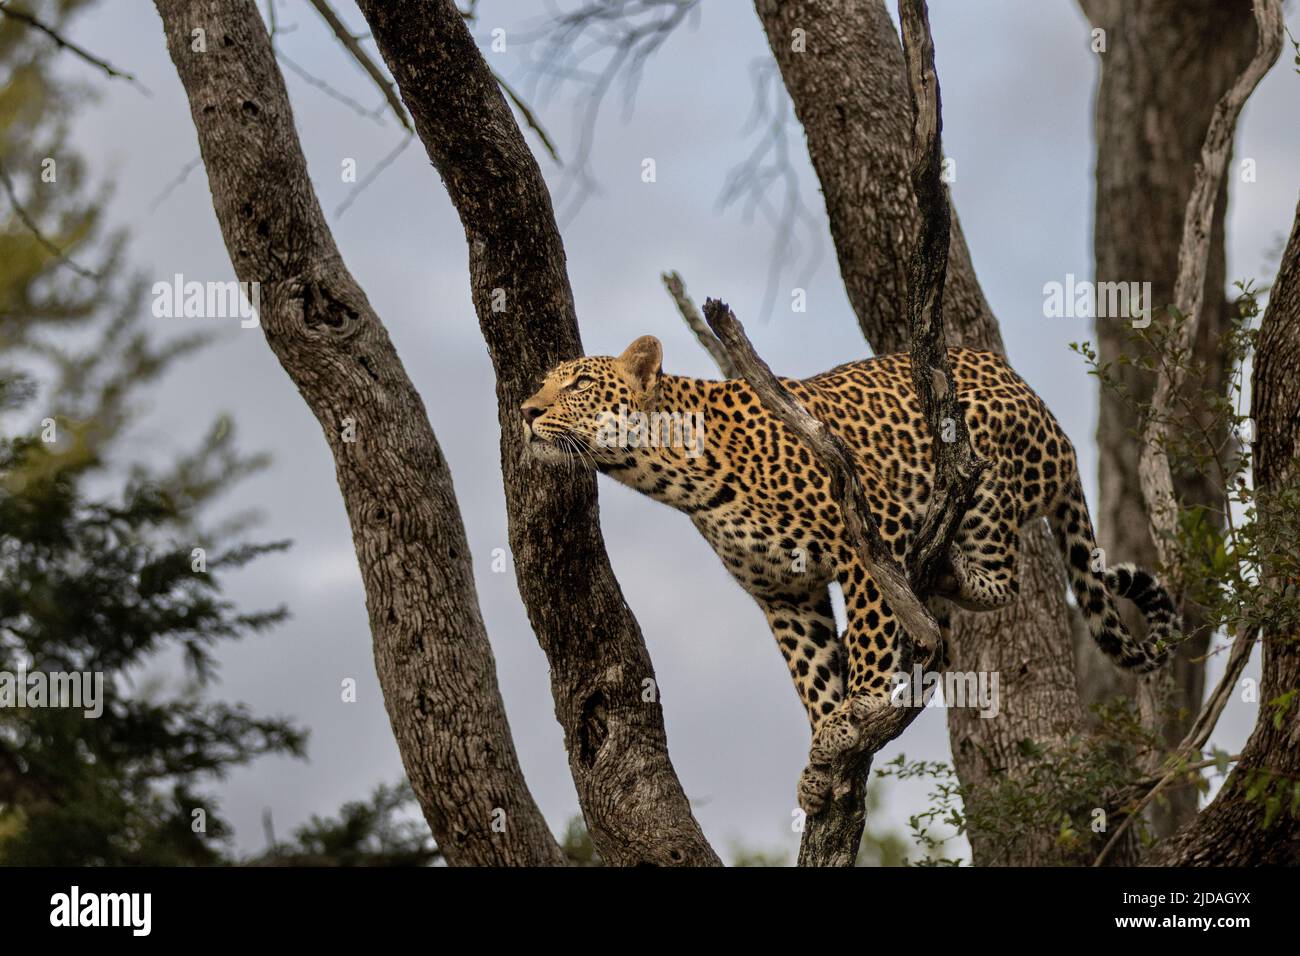 Un léopard, Panthera pardus, se prépare à sauter dans un arbre, en regardant vers le haut Banque D'Images